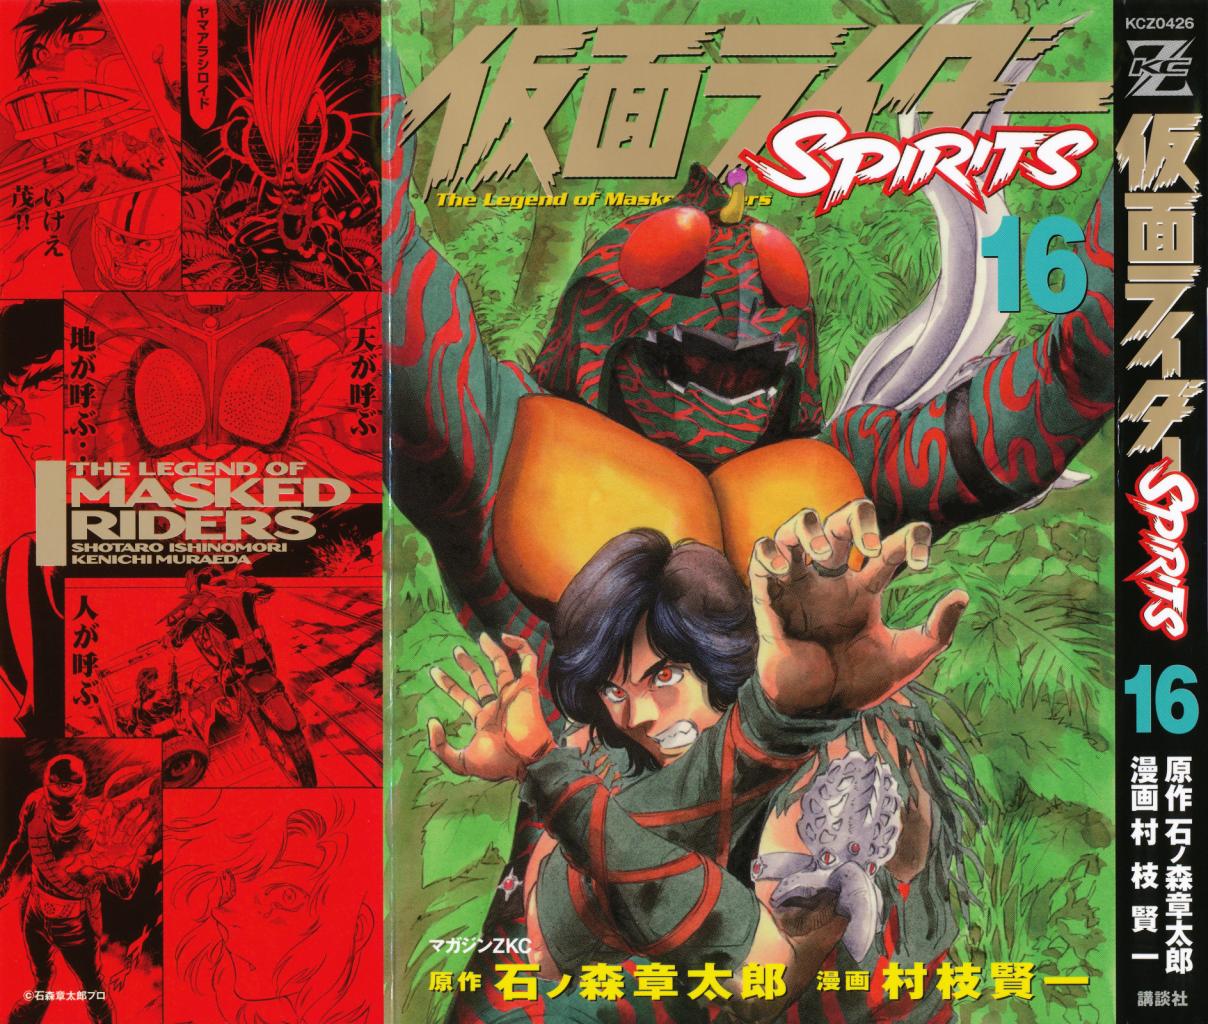 Kamen Rider SPIRITS Vol. 16 Ch. 93 Warrior of Justice